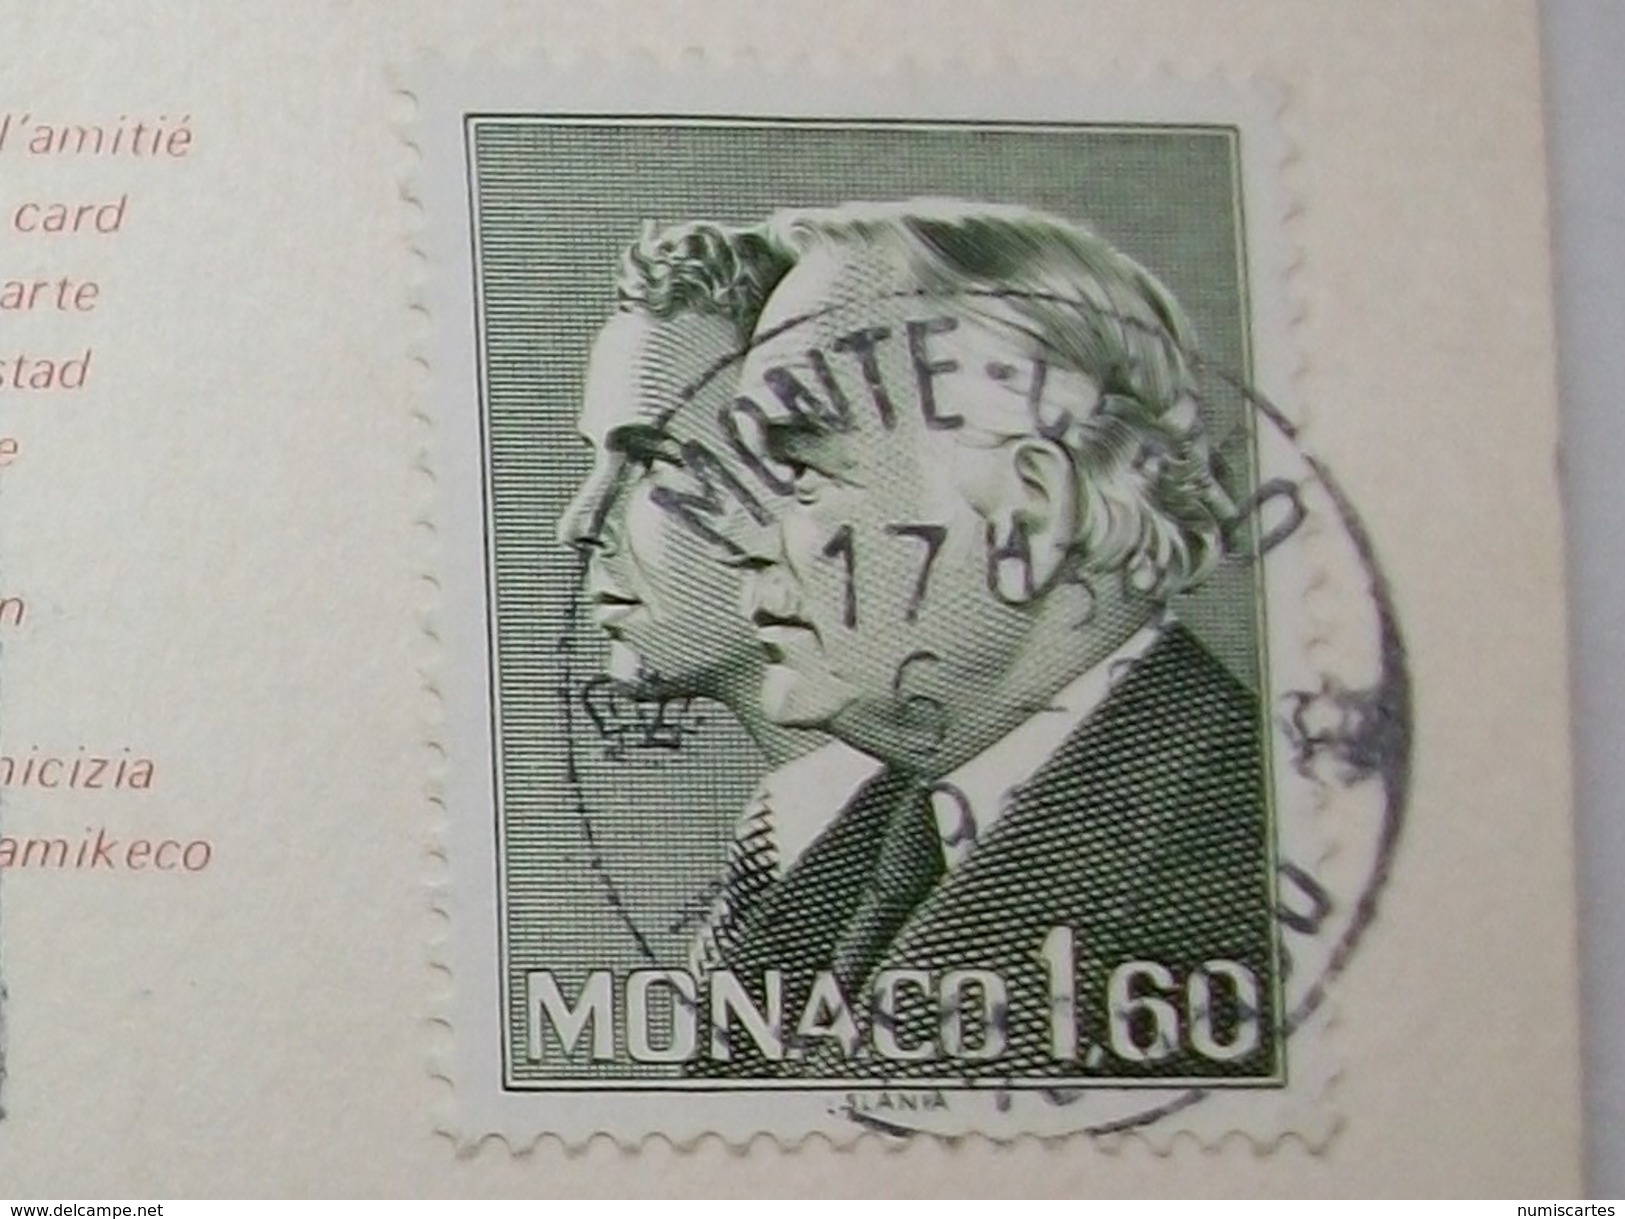 Carte Postale Principauté De Monaco - Hotel Loews Et Le Palais Des Congrés ( Couleur Oblitérée -Tampon Jardin Exotique ) - Hotels